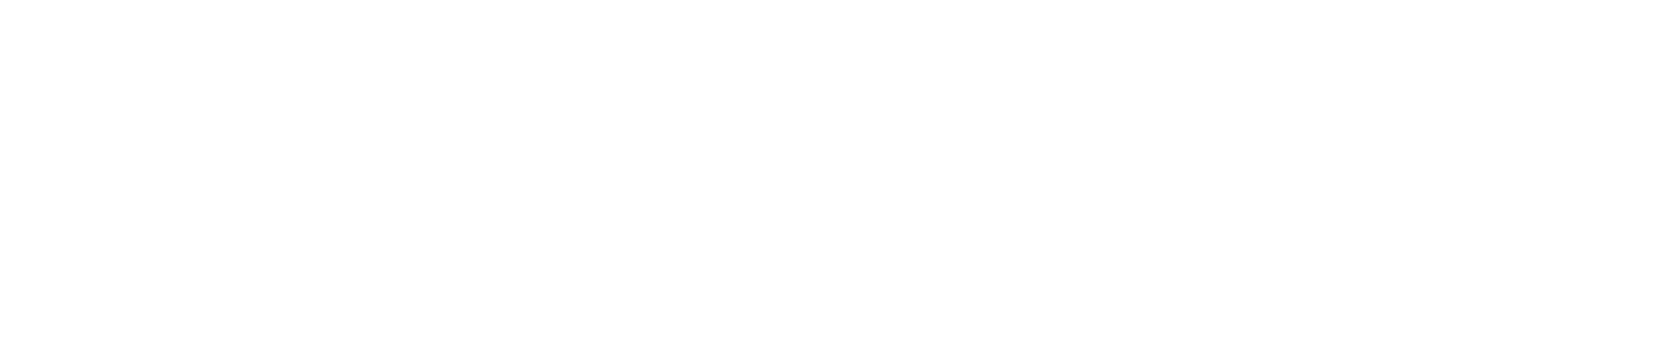 Batashov logo